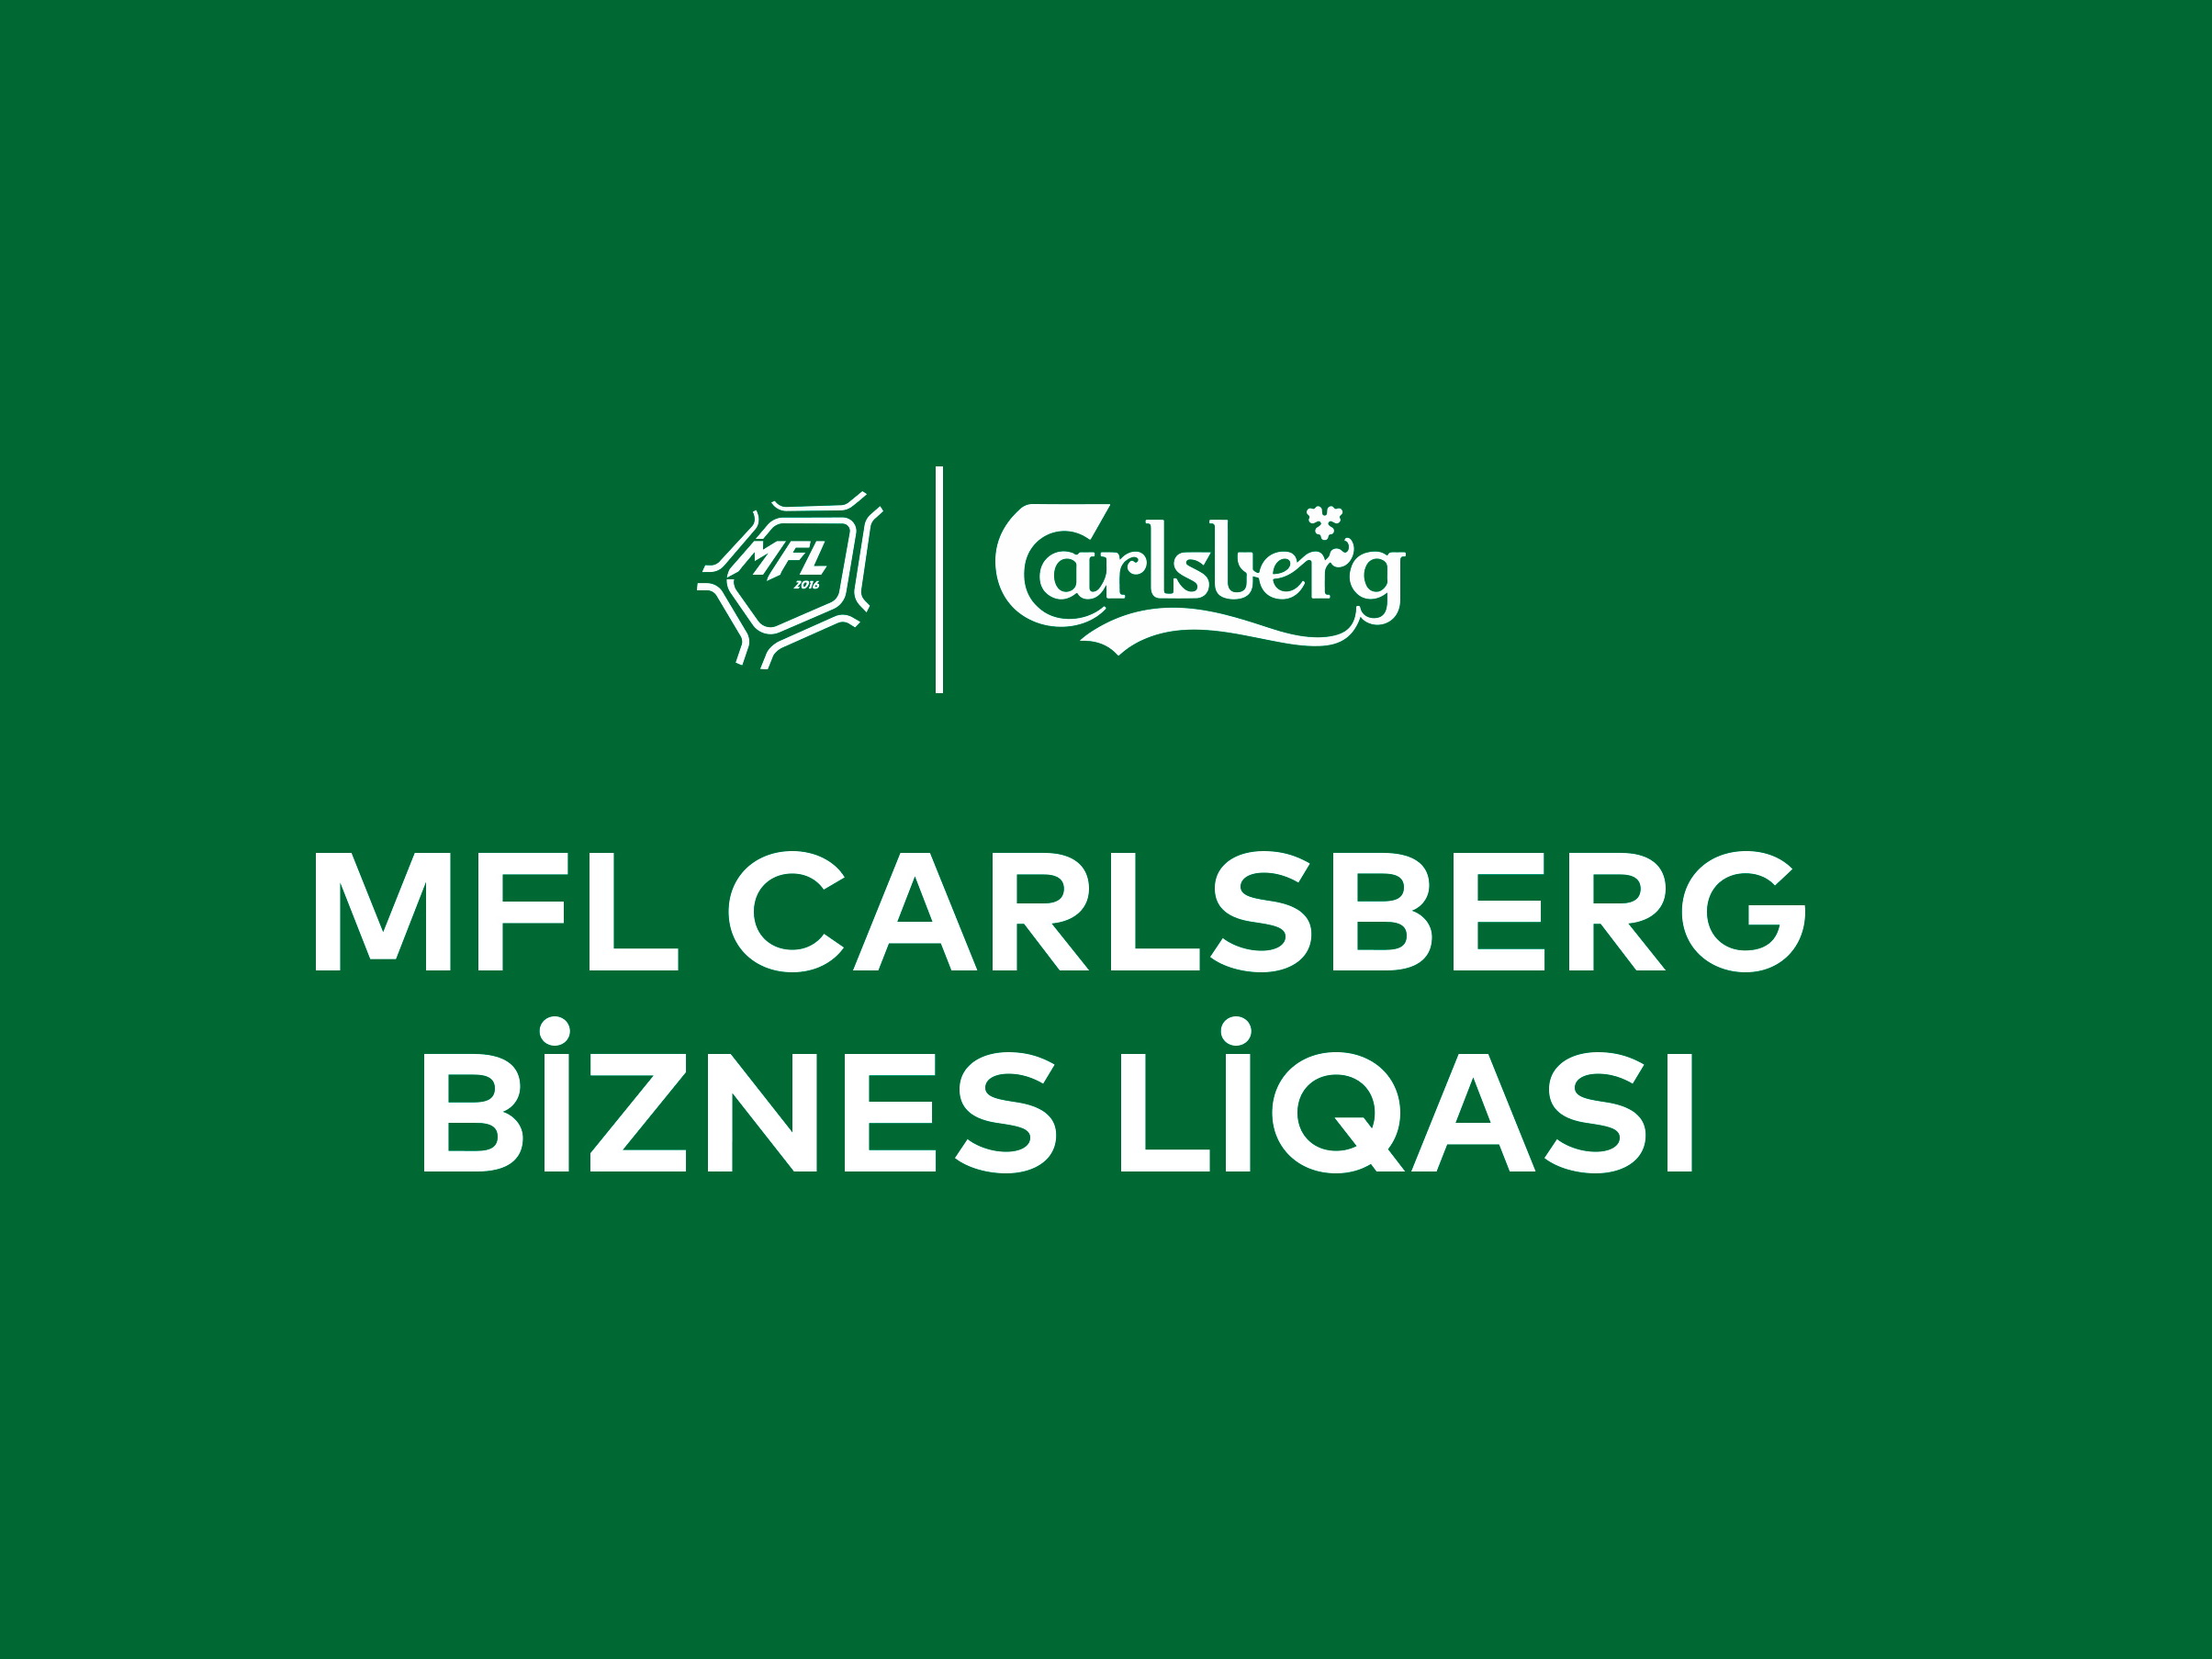 MFL və Carlsberg Azerbaijan futbol “Biznes Liqası” yaradırlar: necə bu turnirin iştirakçısı olmaq olar?